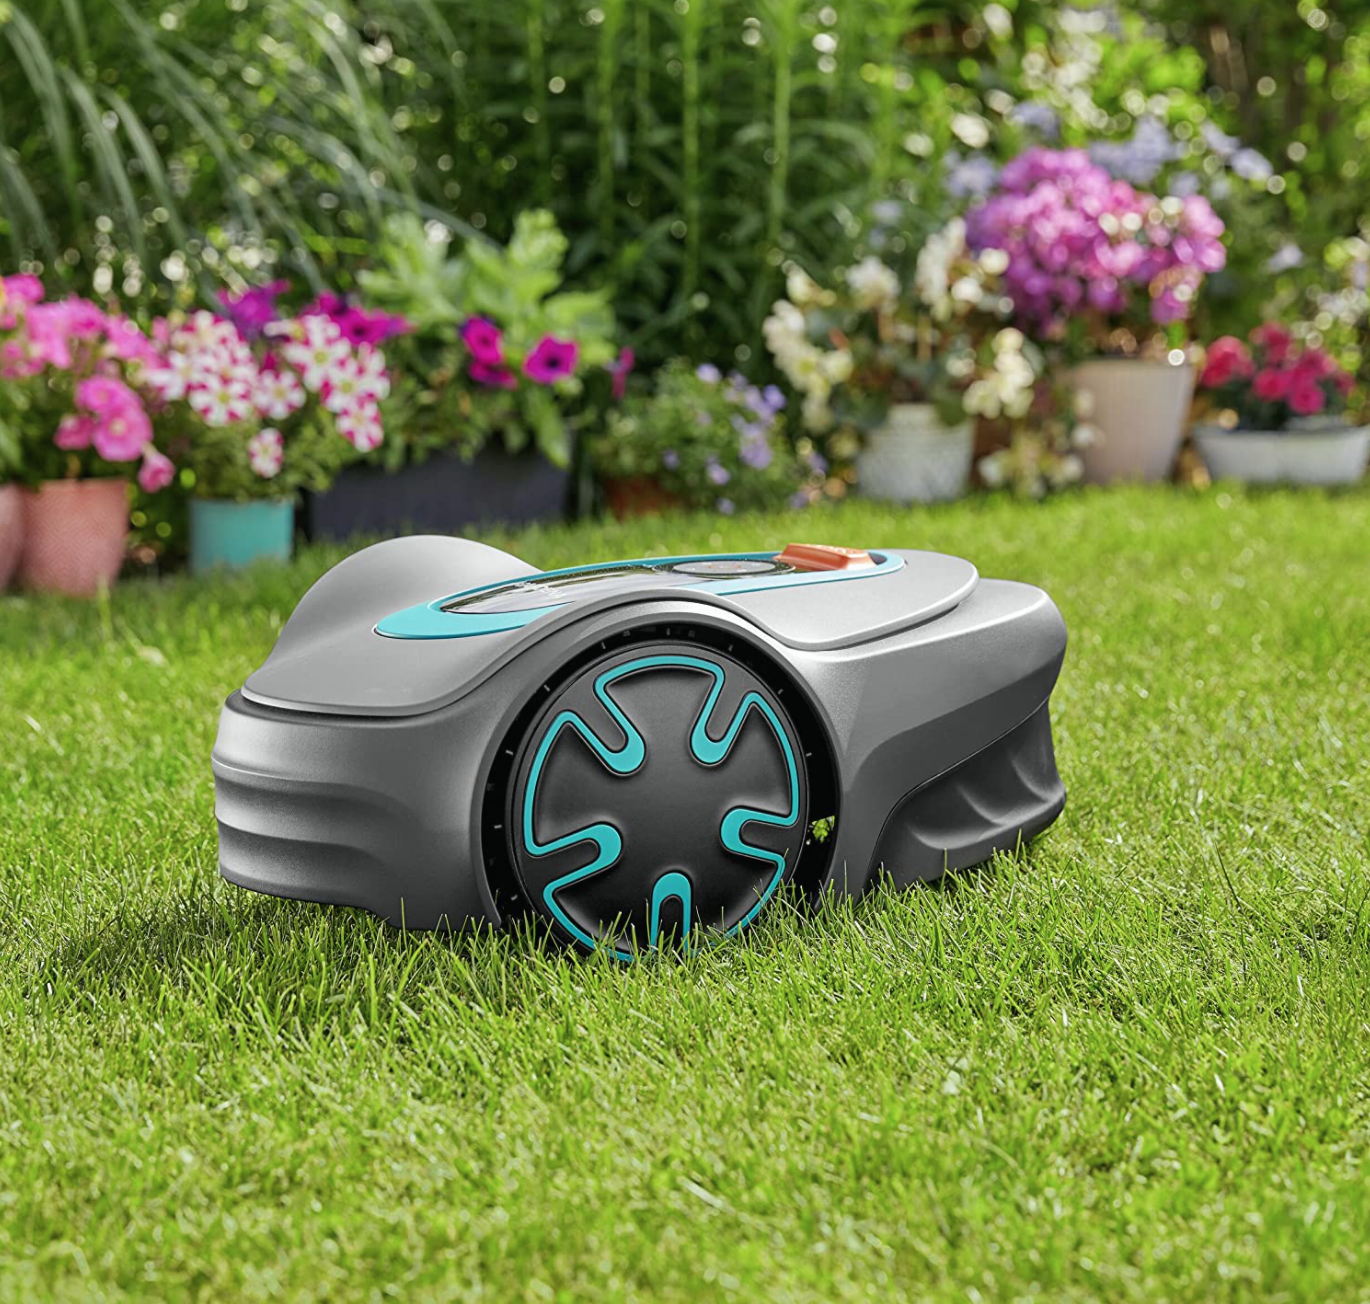 Un robot cortacésped para tener tu jardín perfecto sin esfuerzo